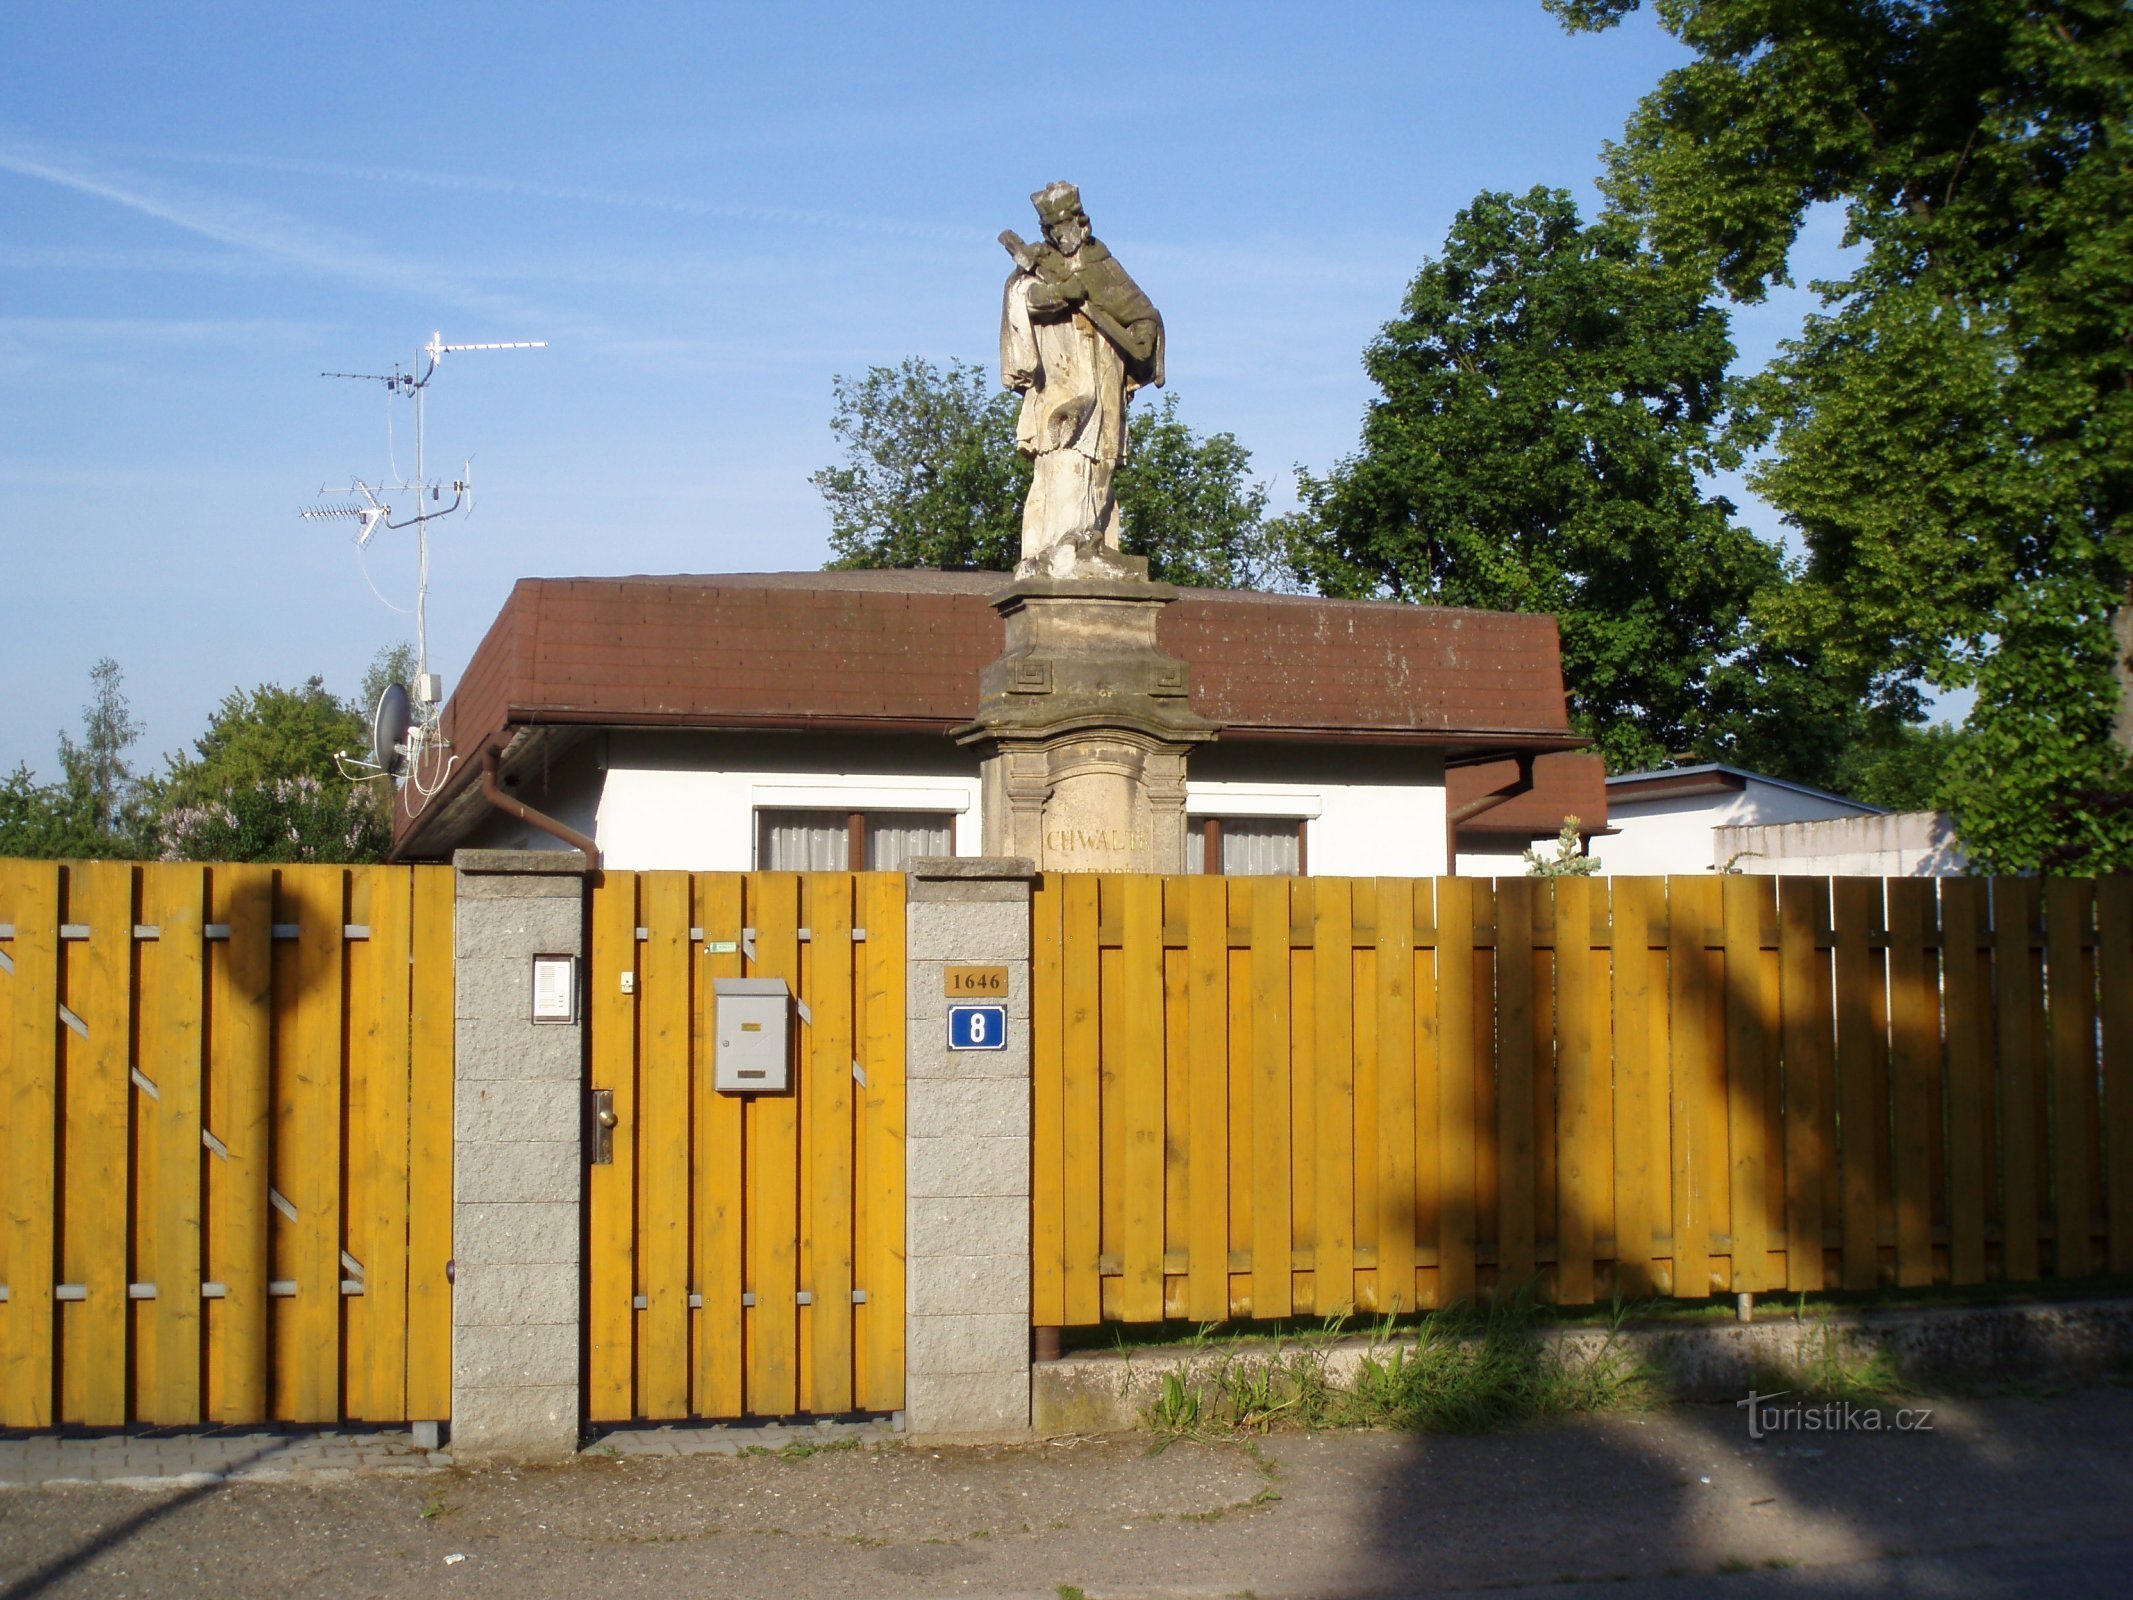 Statua di S. Jan Nepomucký in via Medková (Hradec Králové, 11.5.2011)